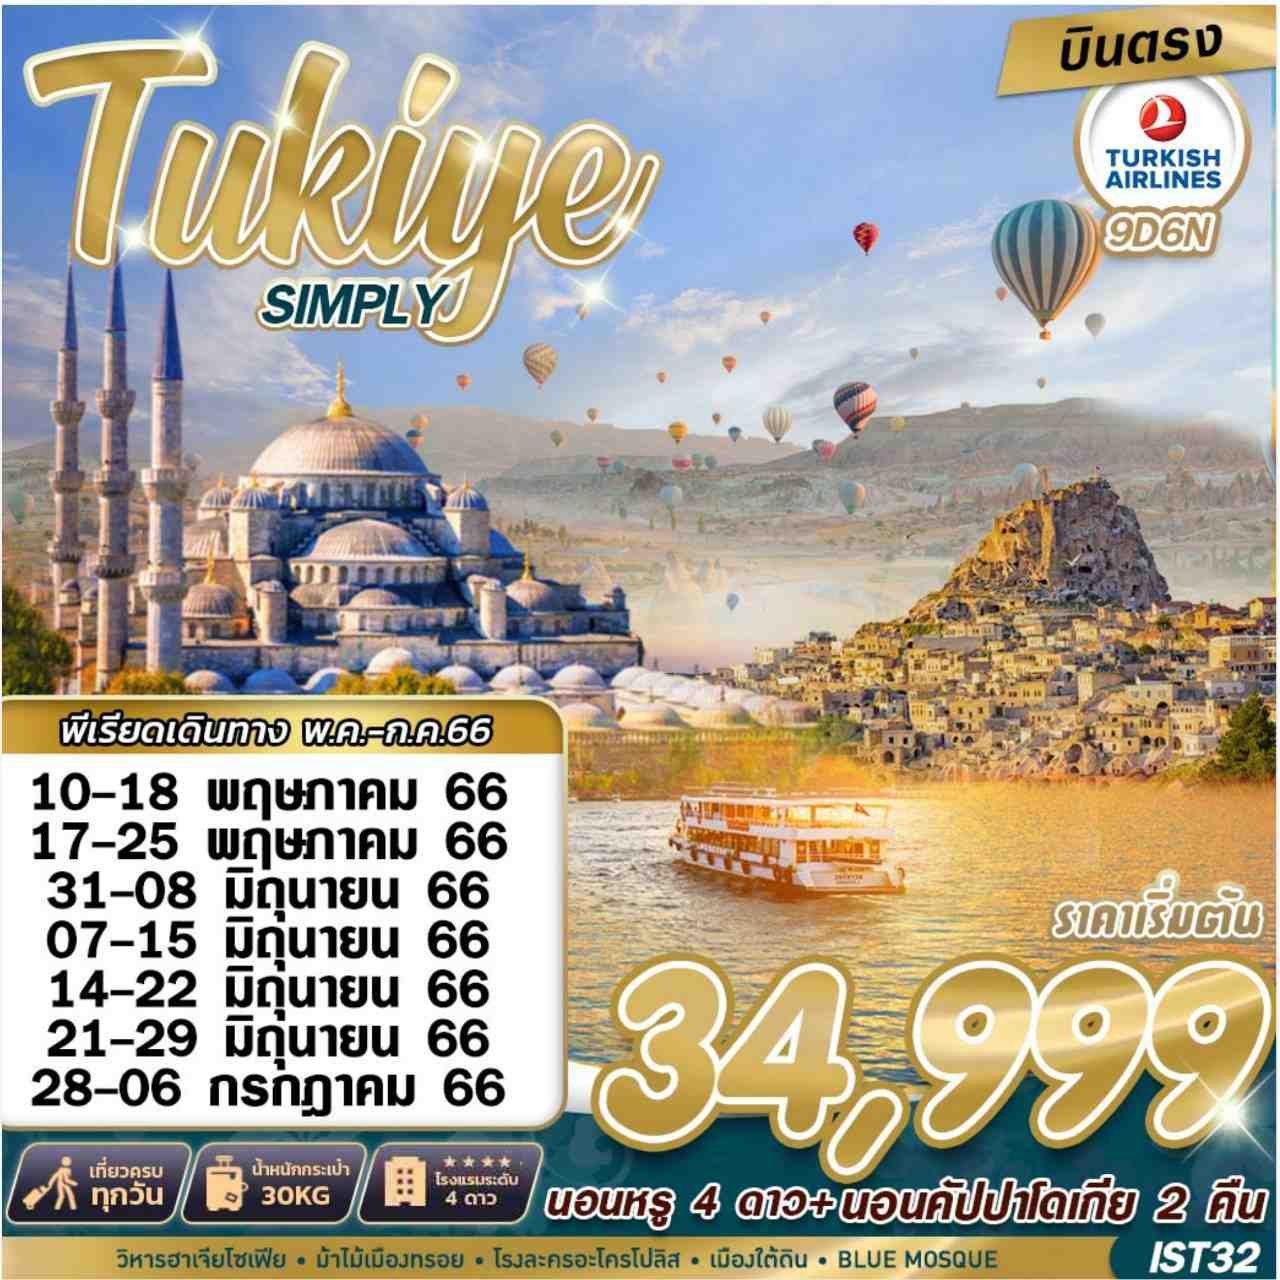 ทัวร์ตุรกี TURKIYE SIMPLY 9D6N BY TK